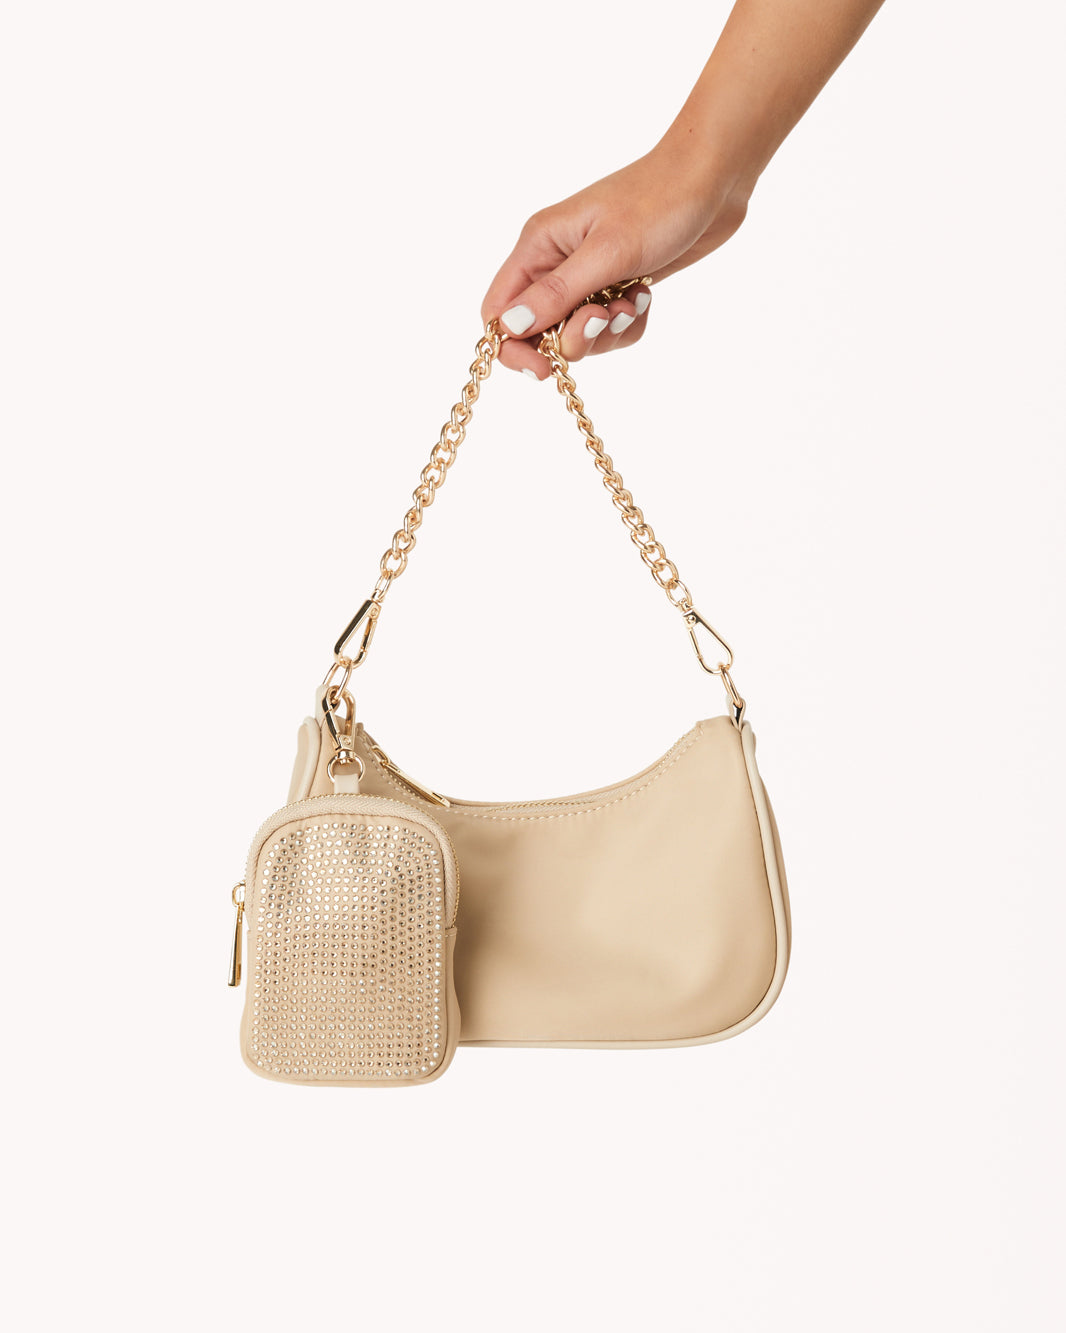 NELLY CROSS BODY BAG - BEIGE NYLON-GOLD DIAMANTE-Handbags-Billini-O/S-BILLINI USA